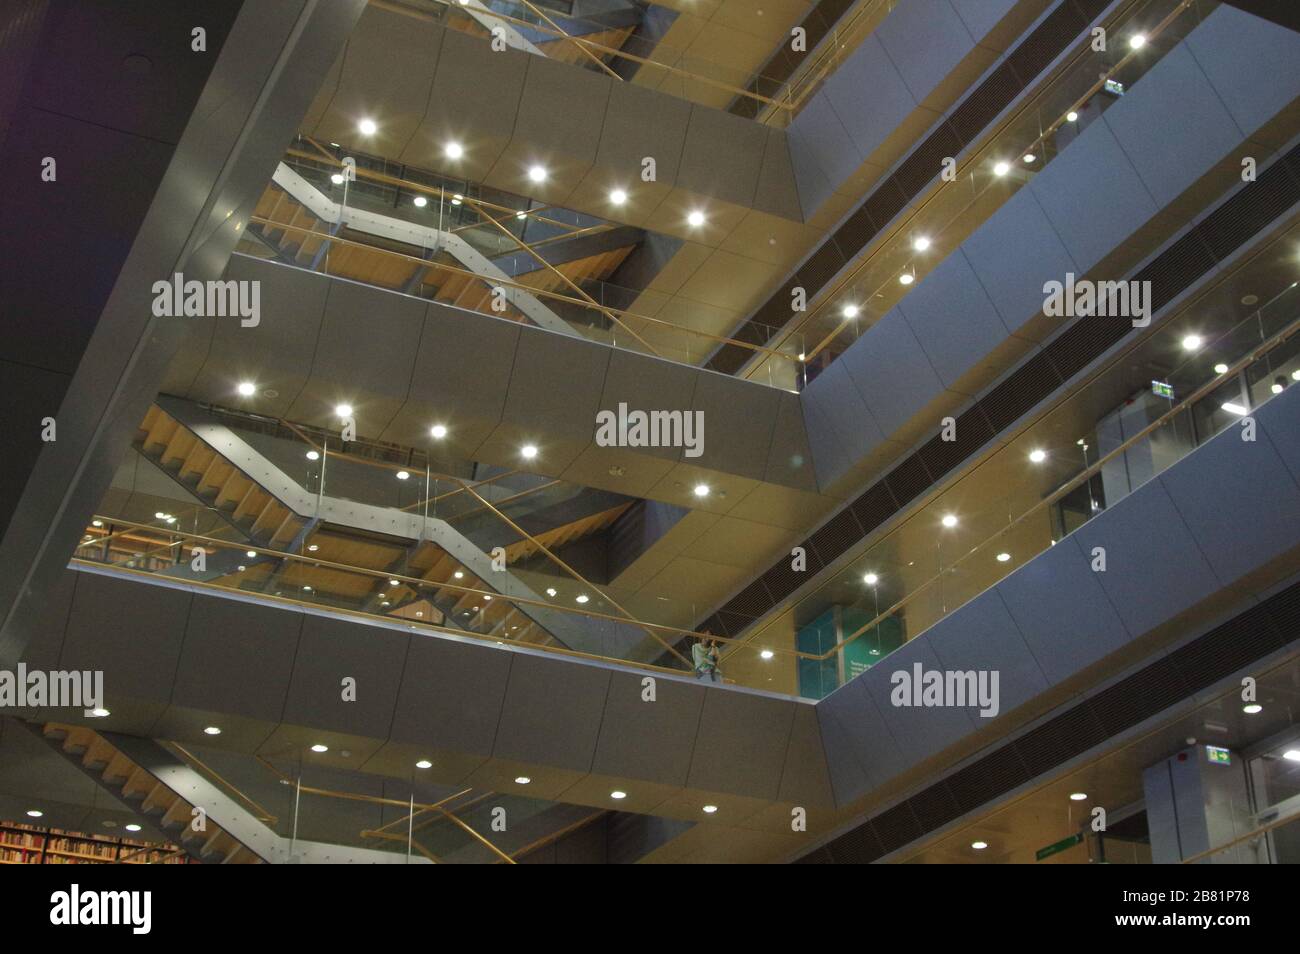 Diseno Y Decoracion En Escalera Moderna Fotografia De Stock Alamy